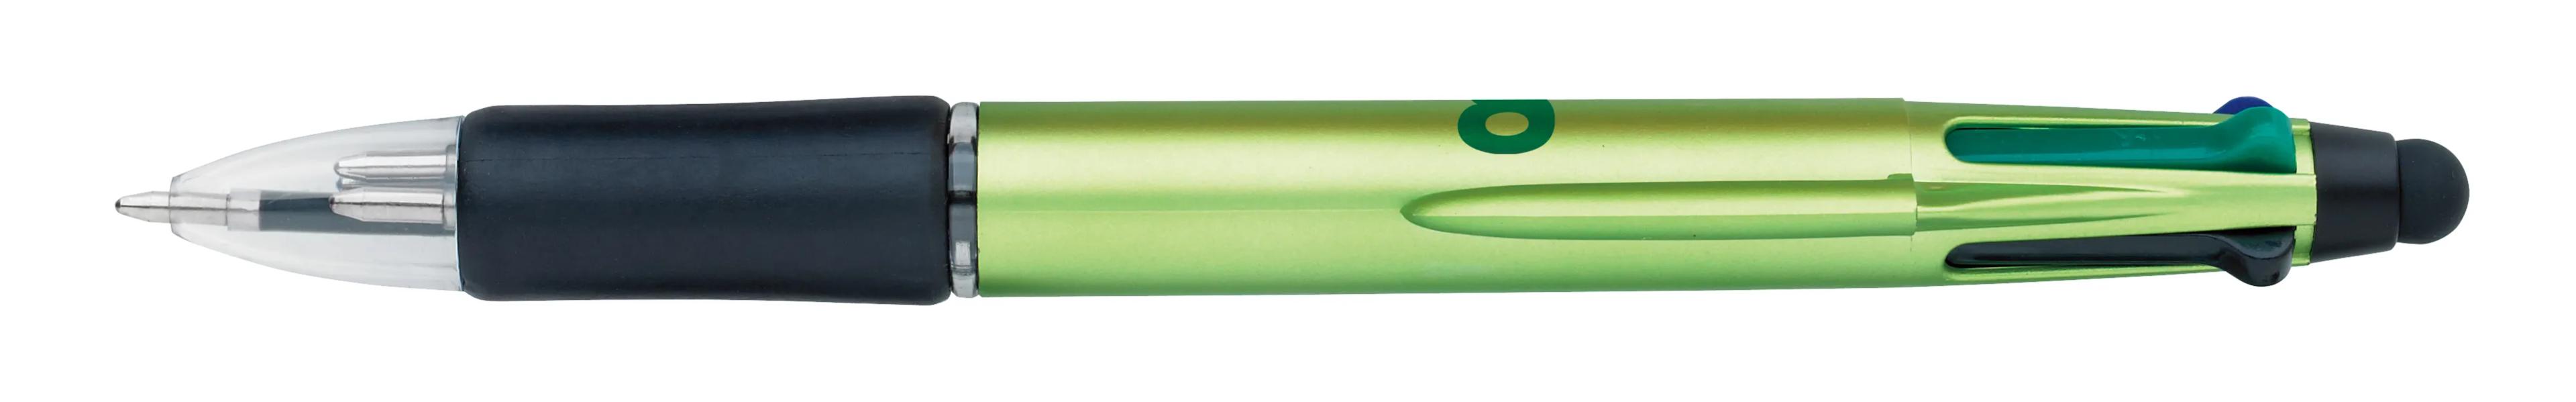 Orbitor Metallic Stylus Pen 45 of 56